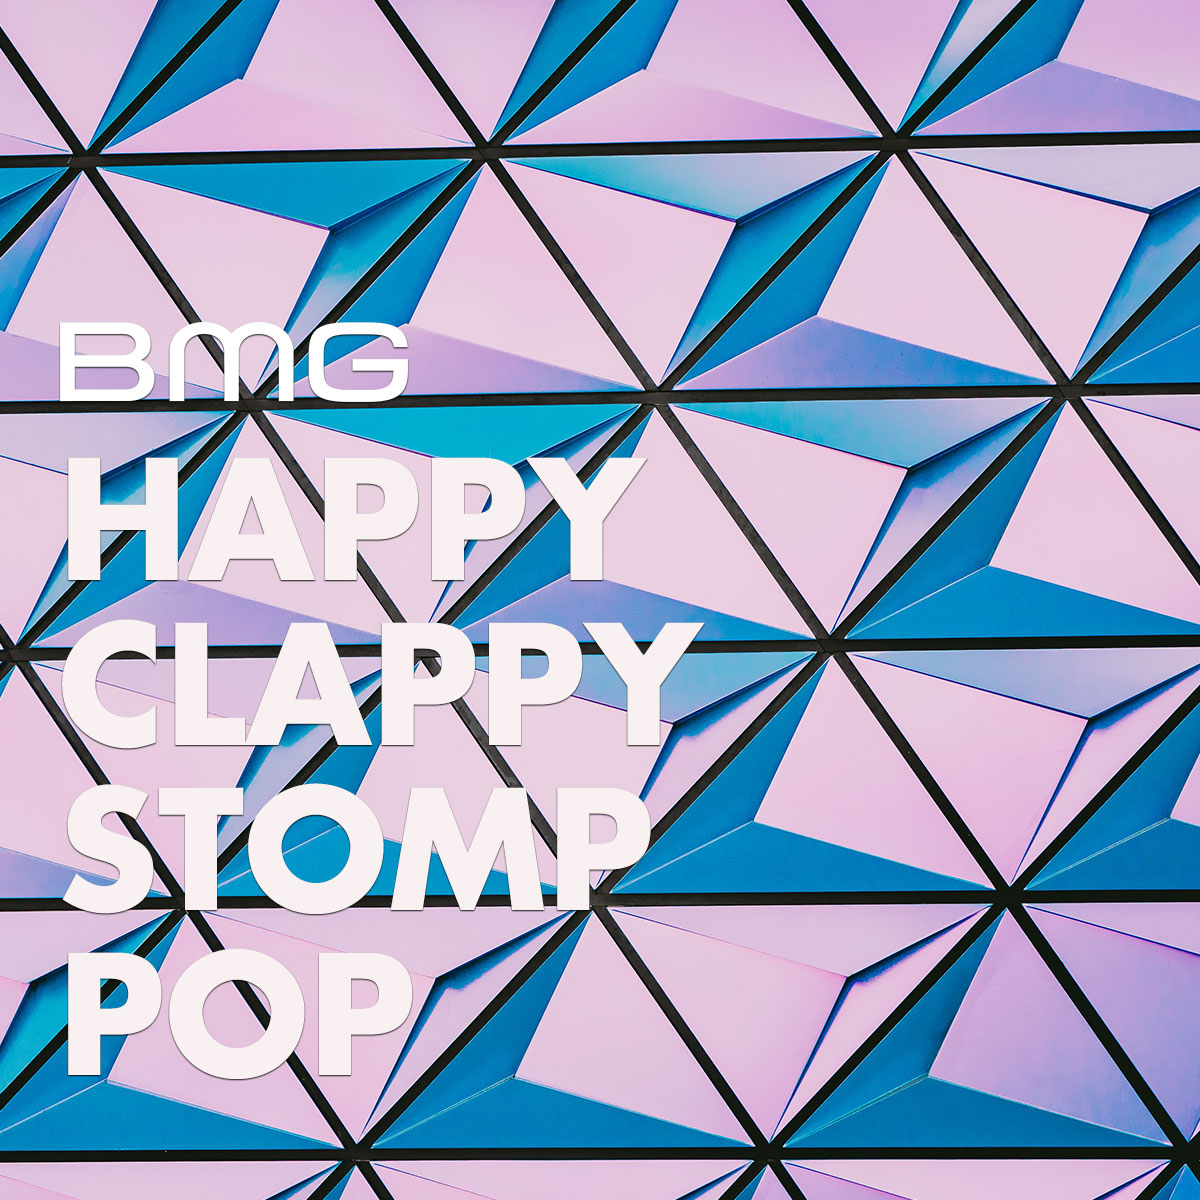  Happy Clappy Stomp Pop; Feel Good;  